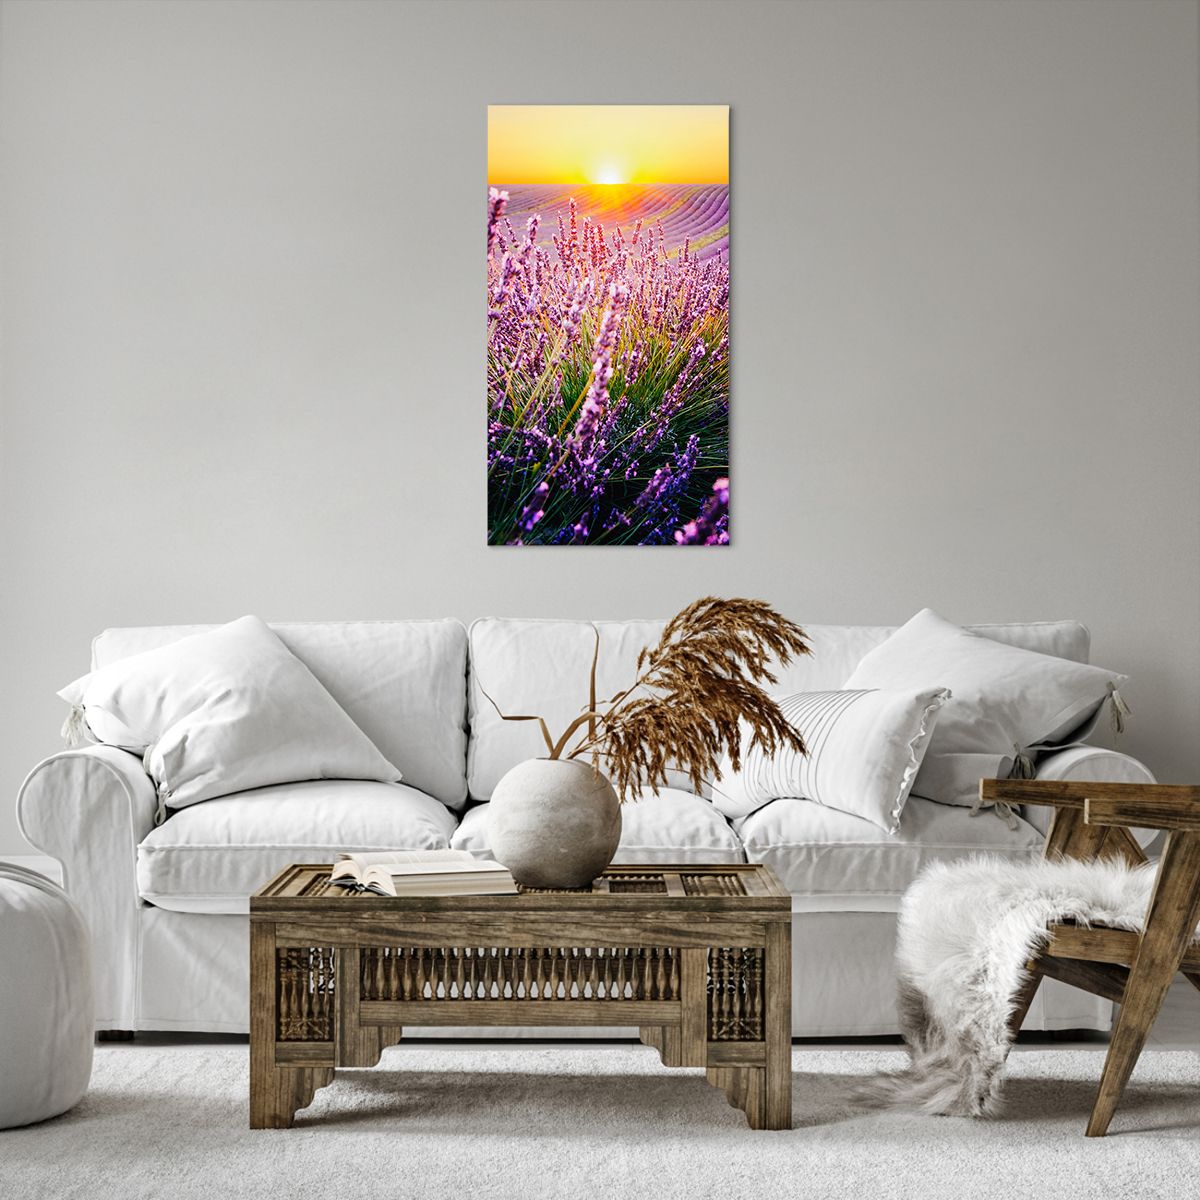 Canvas picture Landscape, Canvas picture Lavender Field, Canvas picture Provence, Canvas picture France, Canvas picture Nature